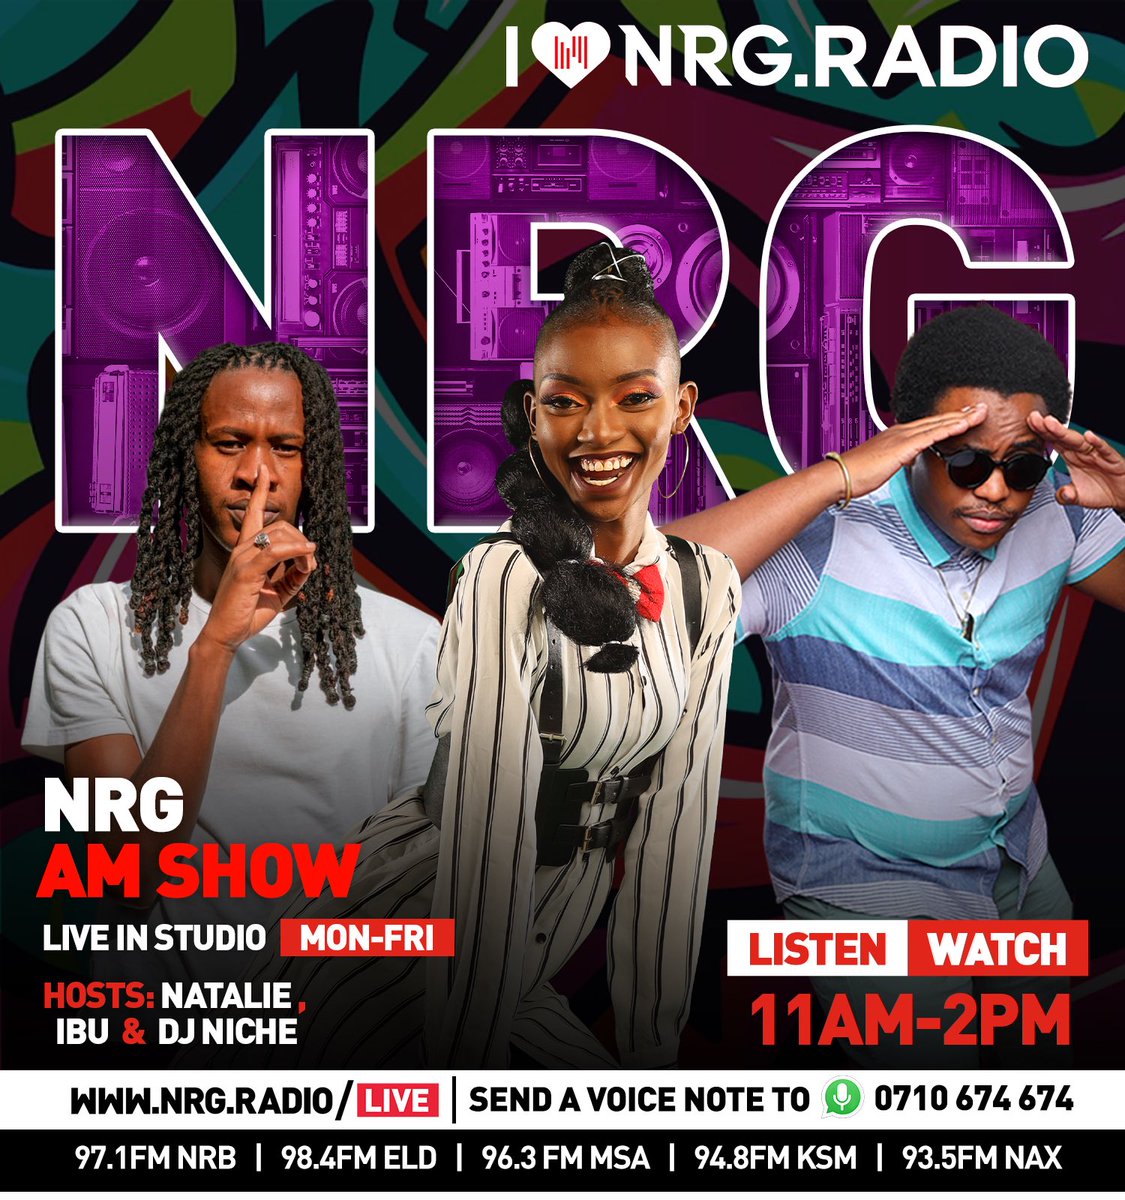 LIVE ON THE SHOW 🔥🔥🔥 Mambo ni Matatu, Sherehe Sherehe na Sherehe 🙌🏾 Where are you tuned in from? @NatalieGithinji @IbuIke7 @NRGRadioKenya #NRGAMShow